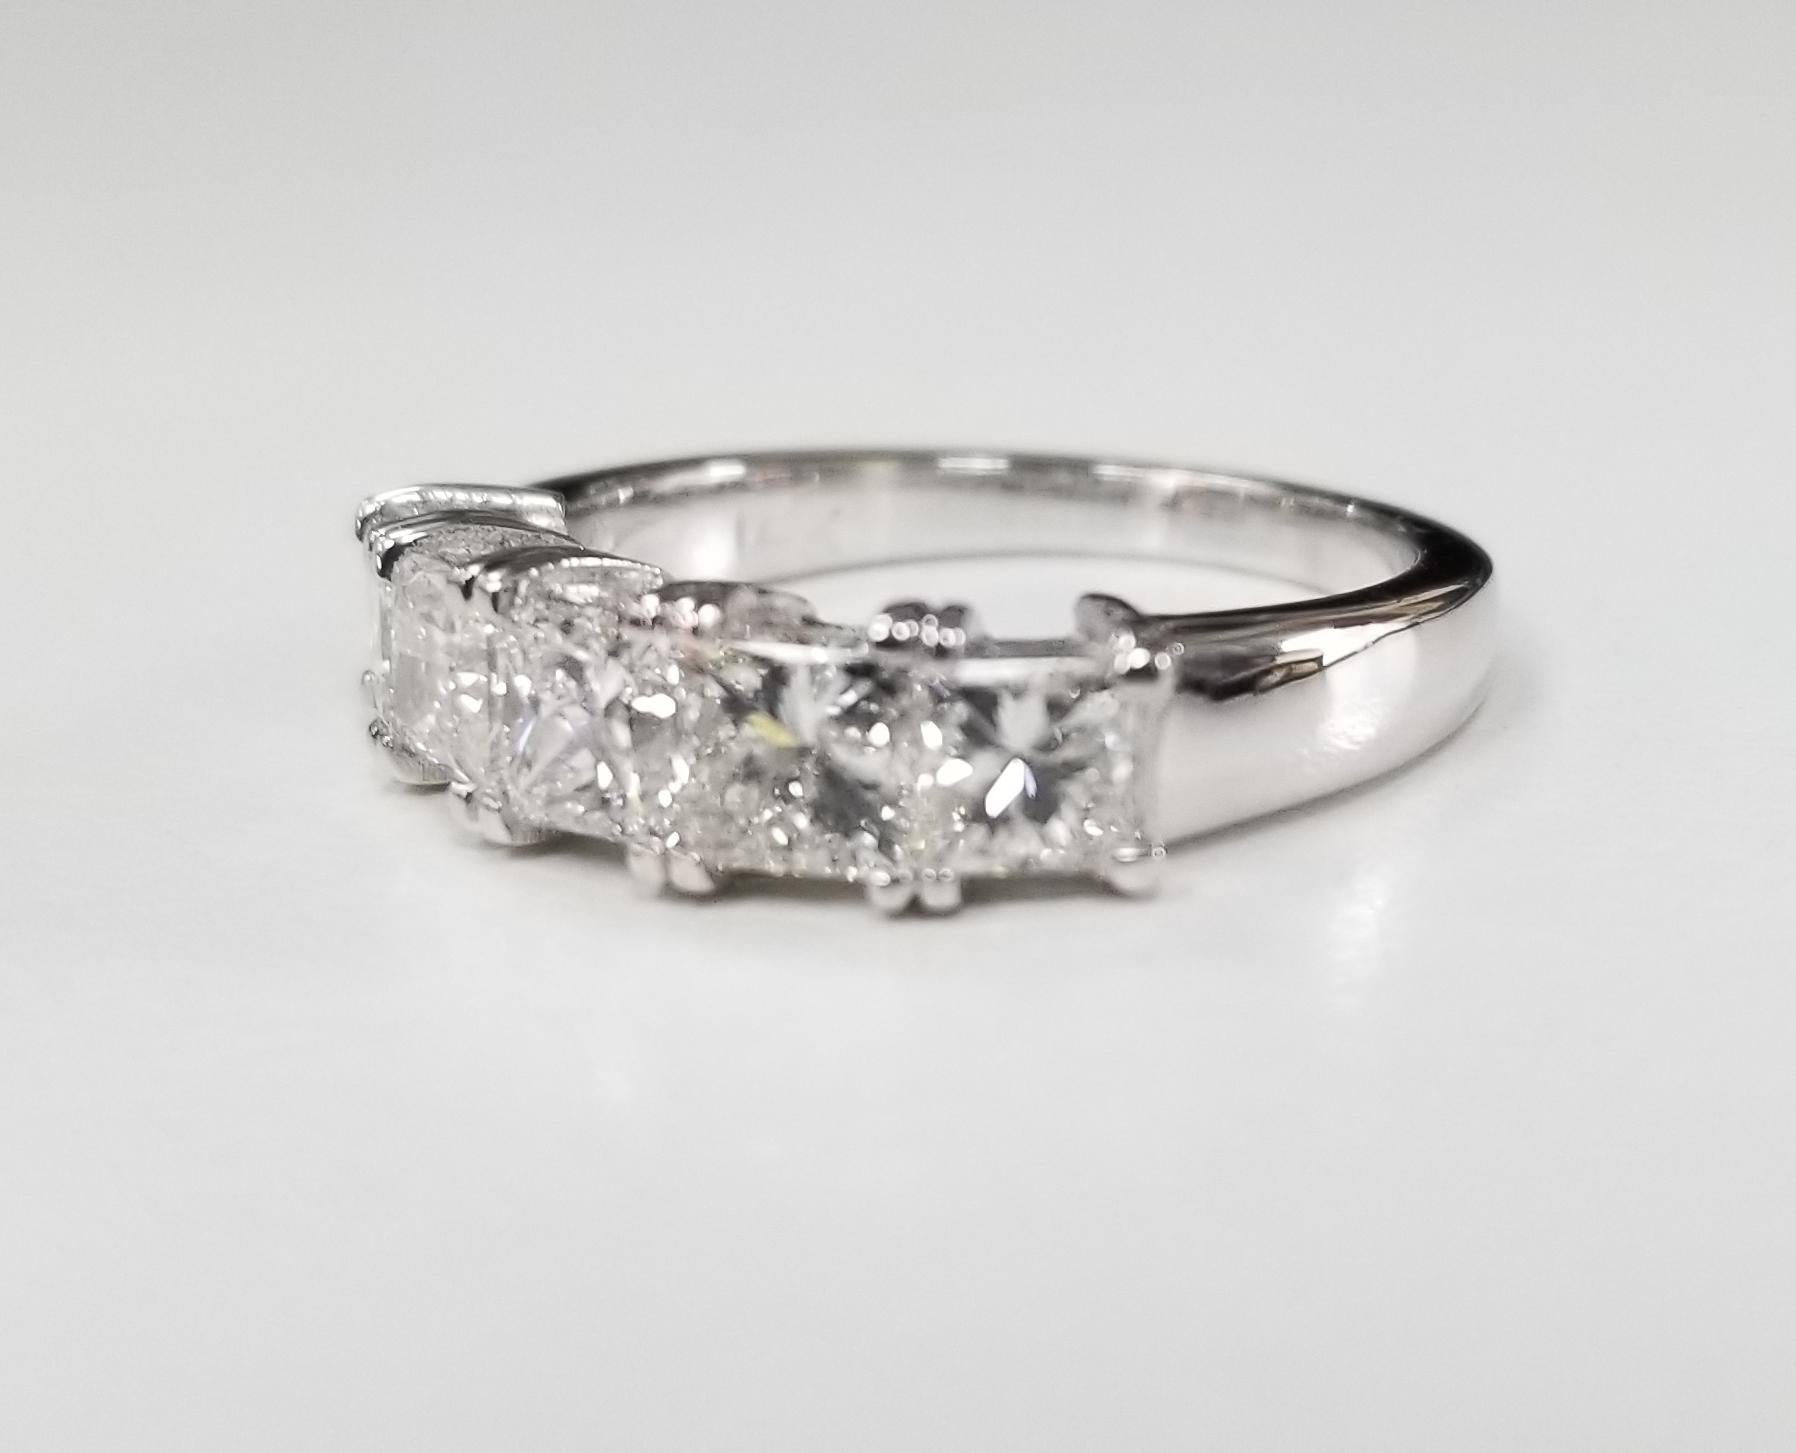 14k white gold 5 stone princess cut diamond Anniversary ring 1.80cts., containing 5 princess cut diamond; color 